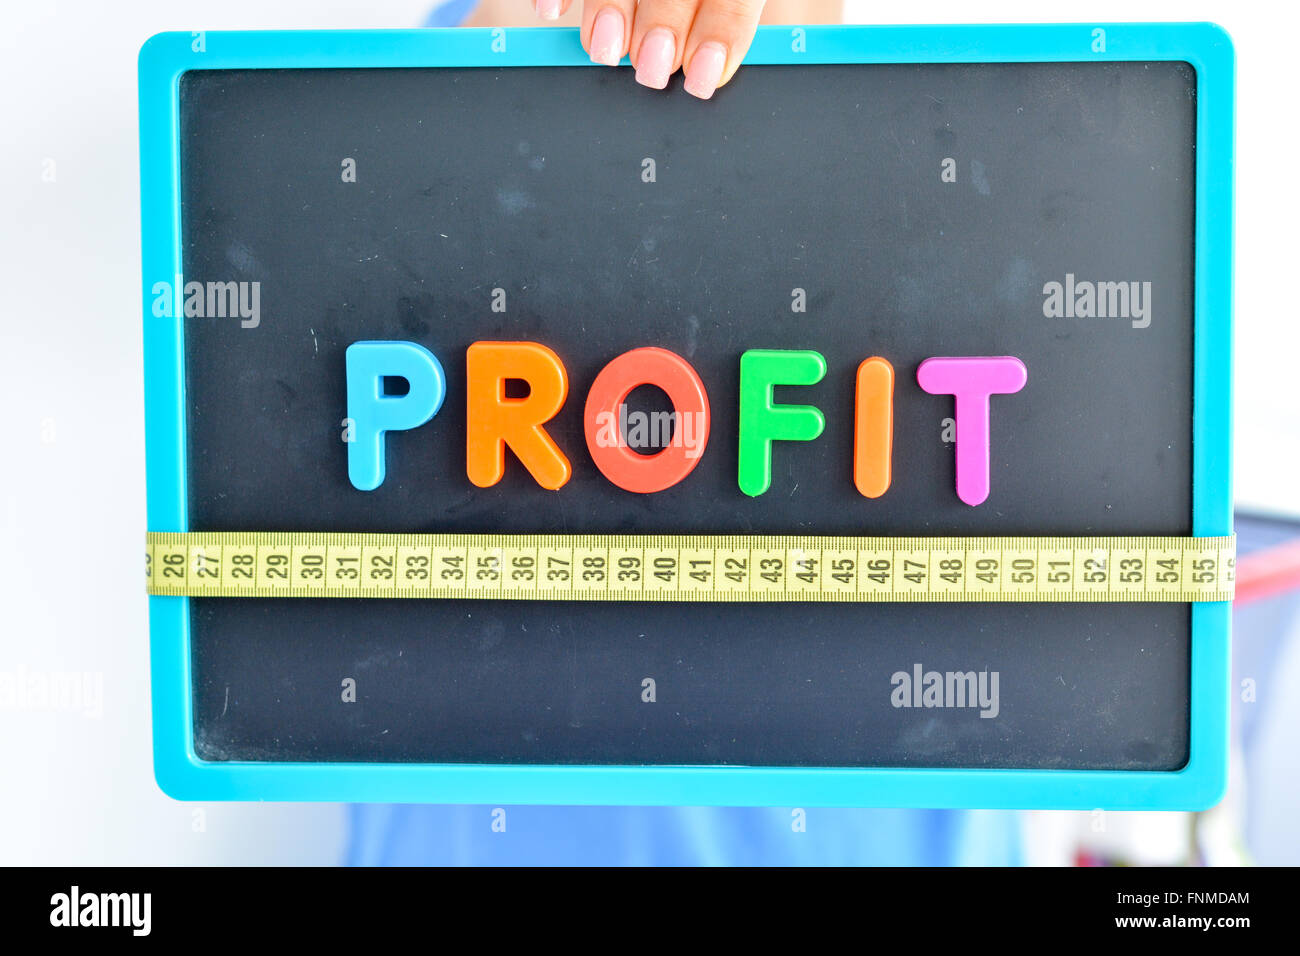 Mesurer votre profit concept écrit comme blocs de couleur magnétique lettre avec l'échelle Banque D'Images